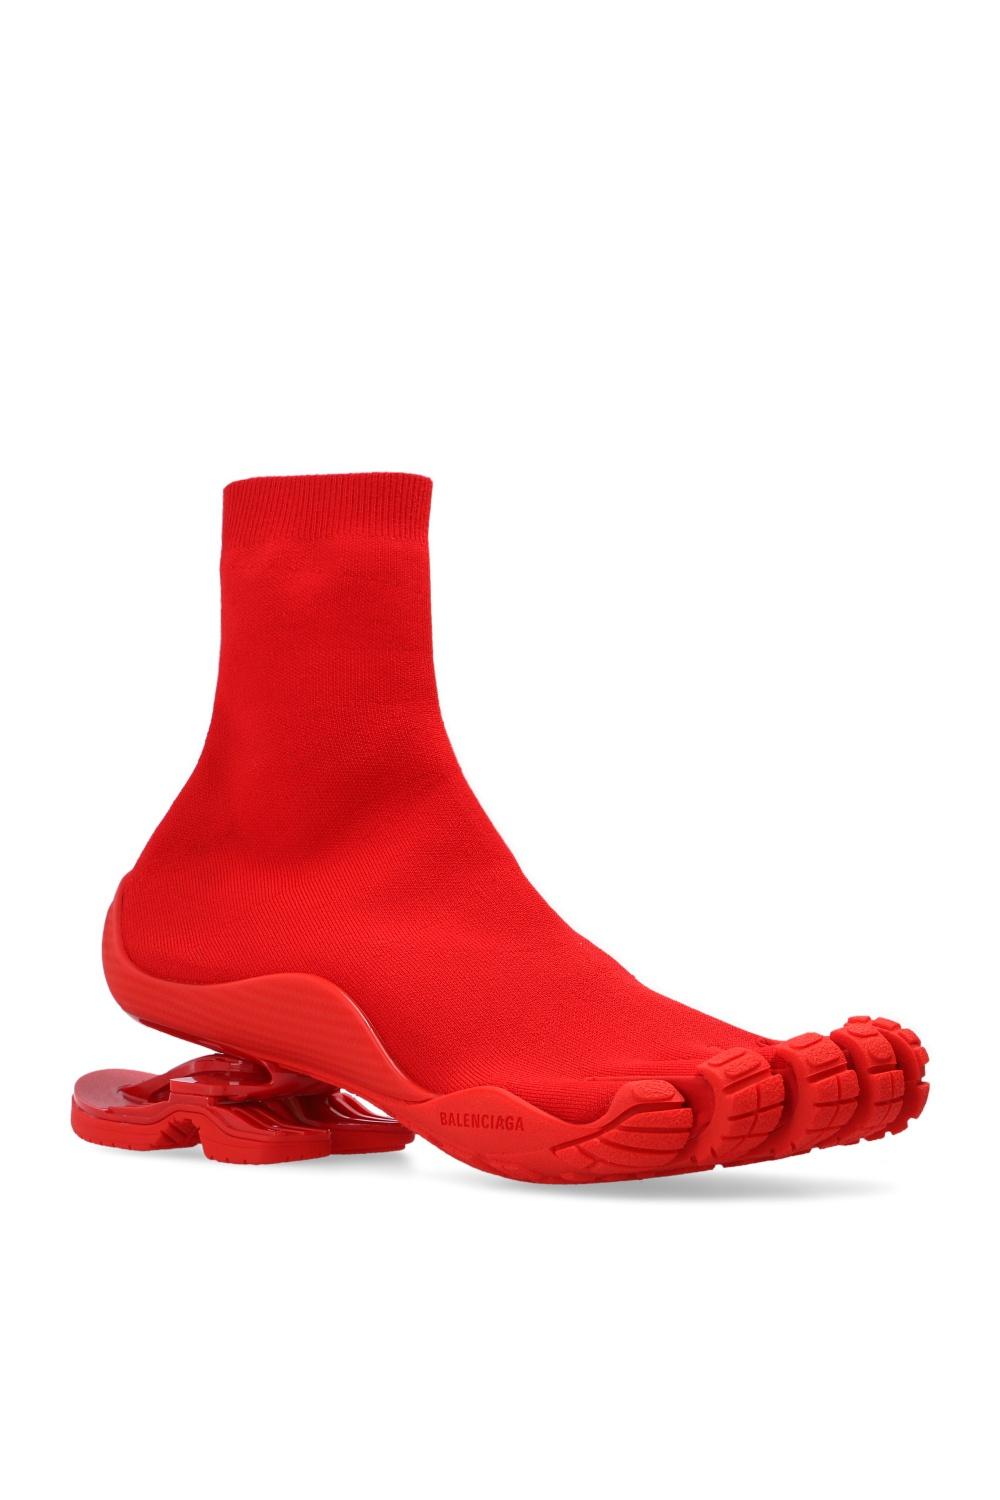 Balenciaga Sock Tennis Shoes | vlr.eng.br